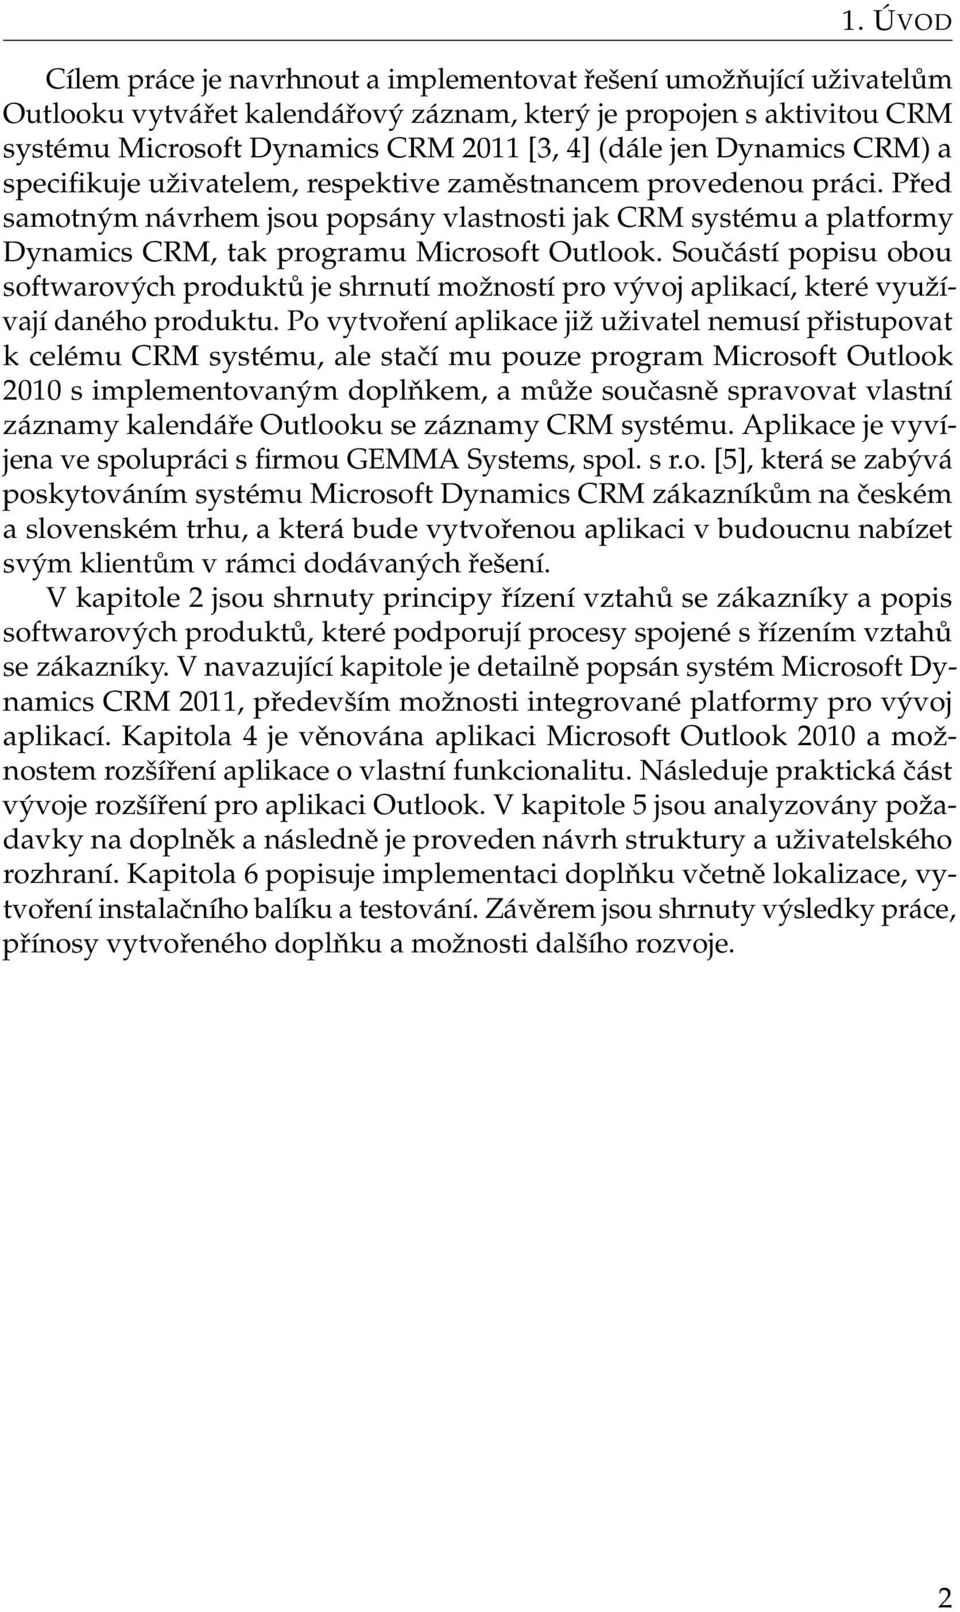 Před samotným návrhem jsou popsány vlastnosti jak CRM systému a platformy Dynamics CRM, tak programu Microsoft Outlook.